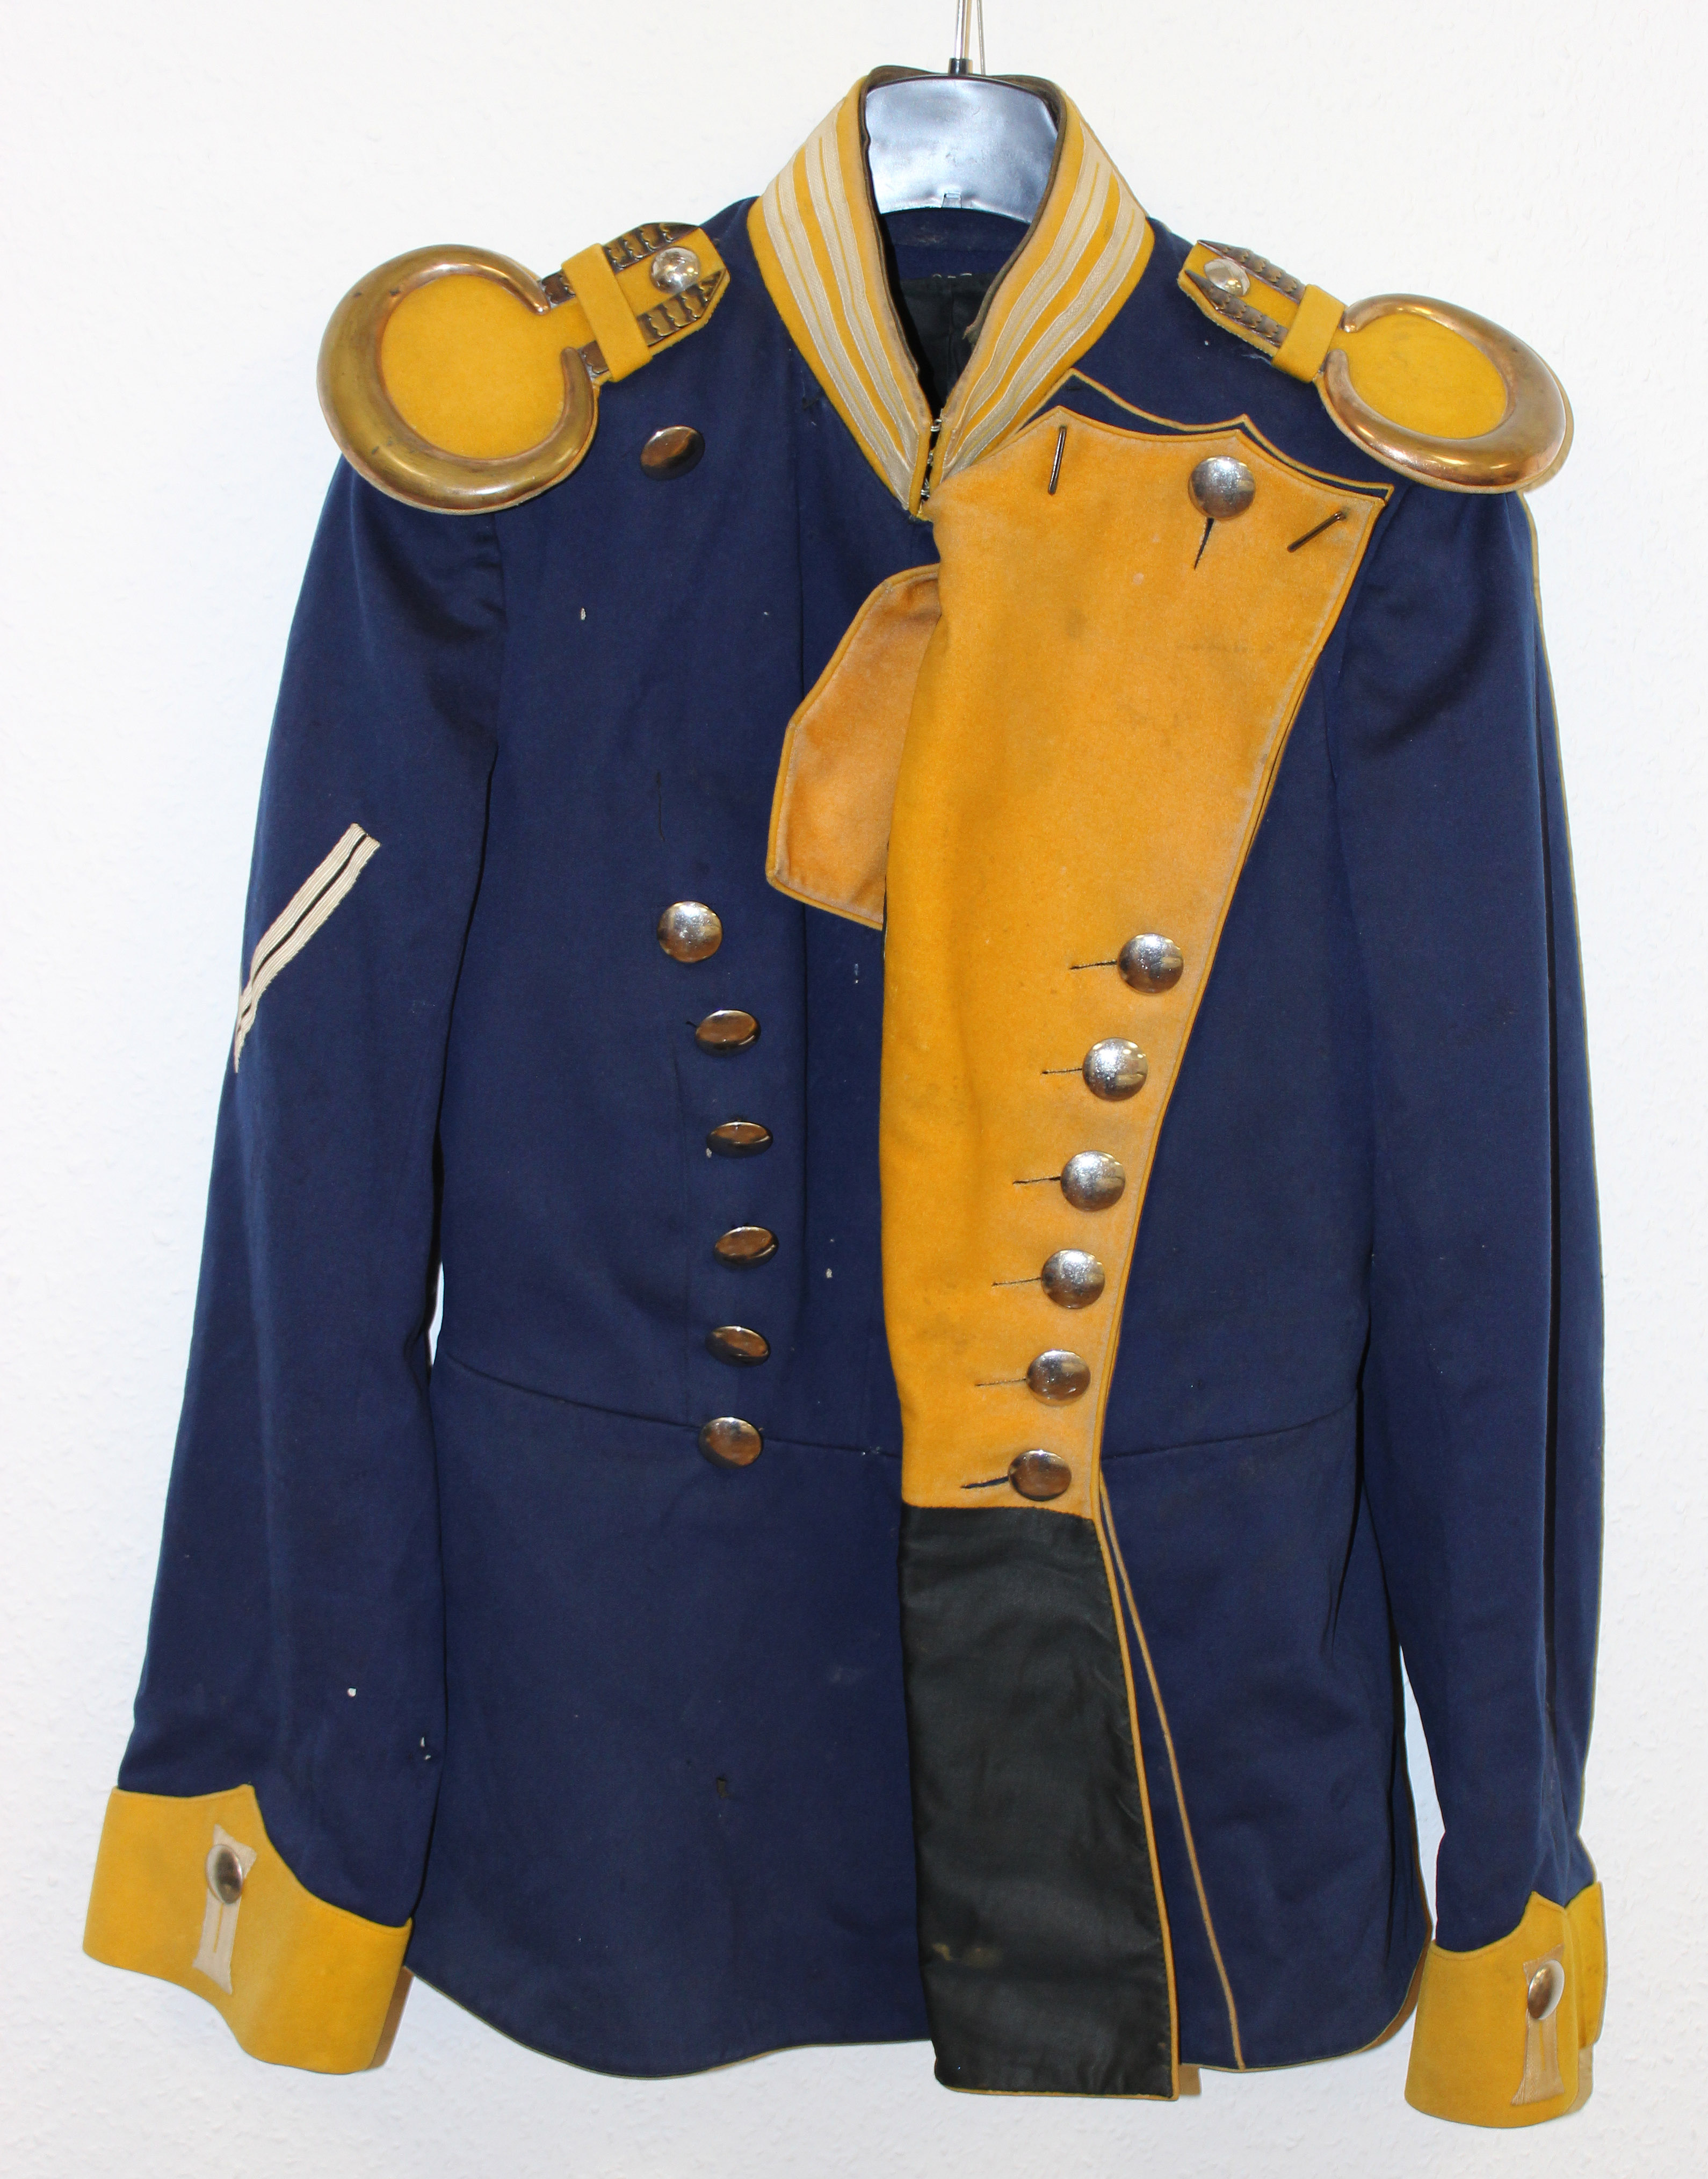 Uniformjacke eines Soldaten (Museum Wolmirstedt RR-F)